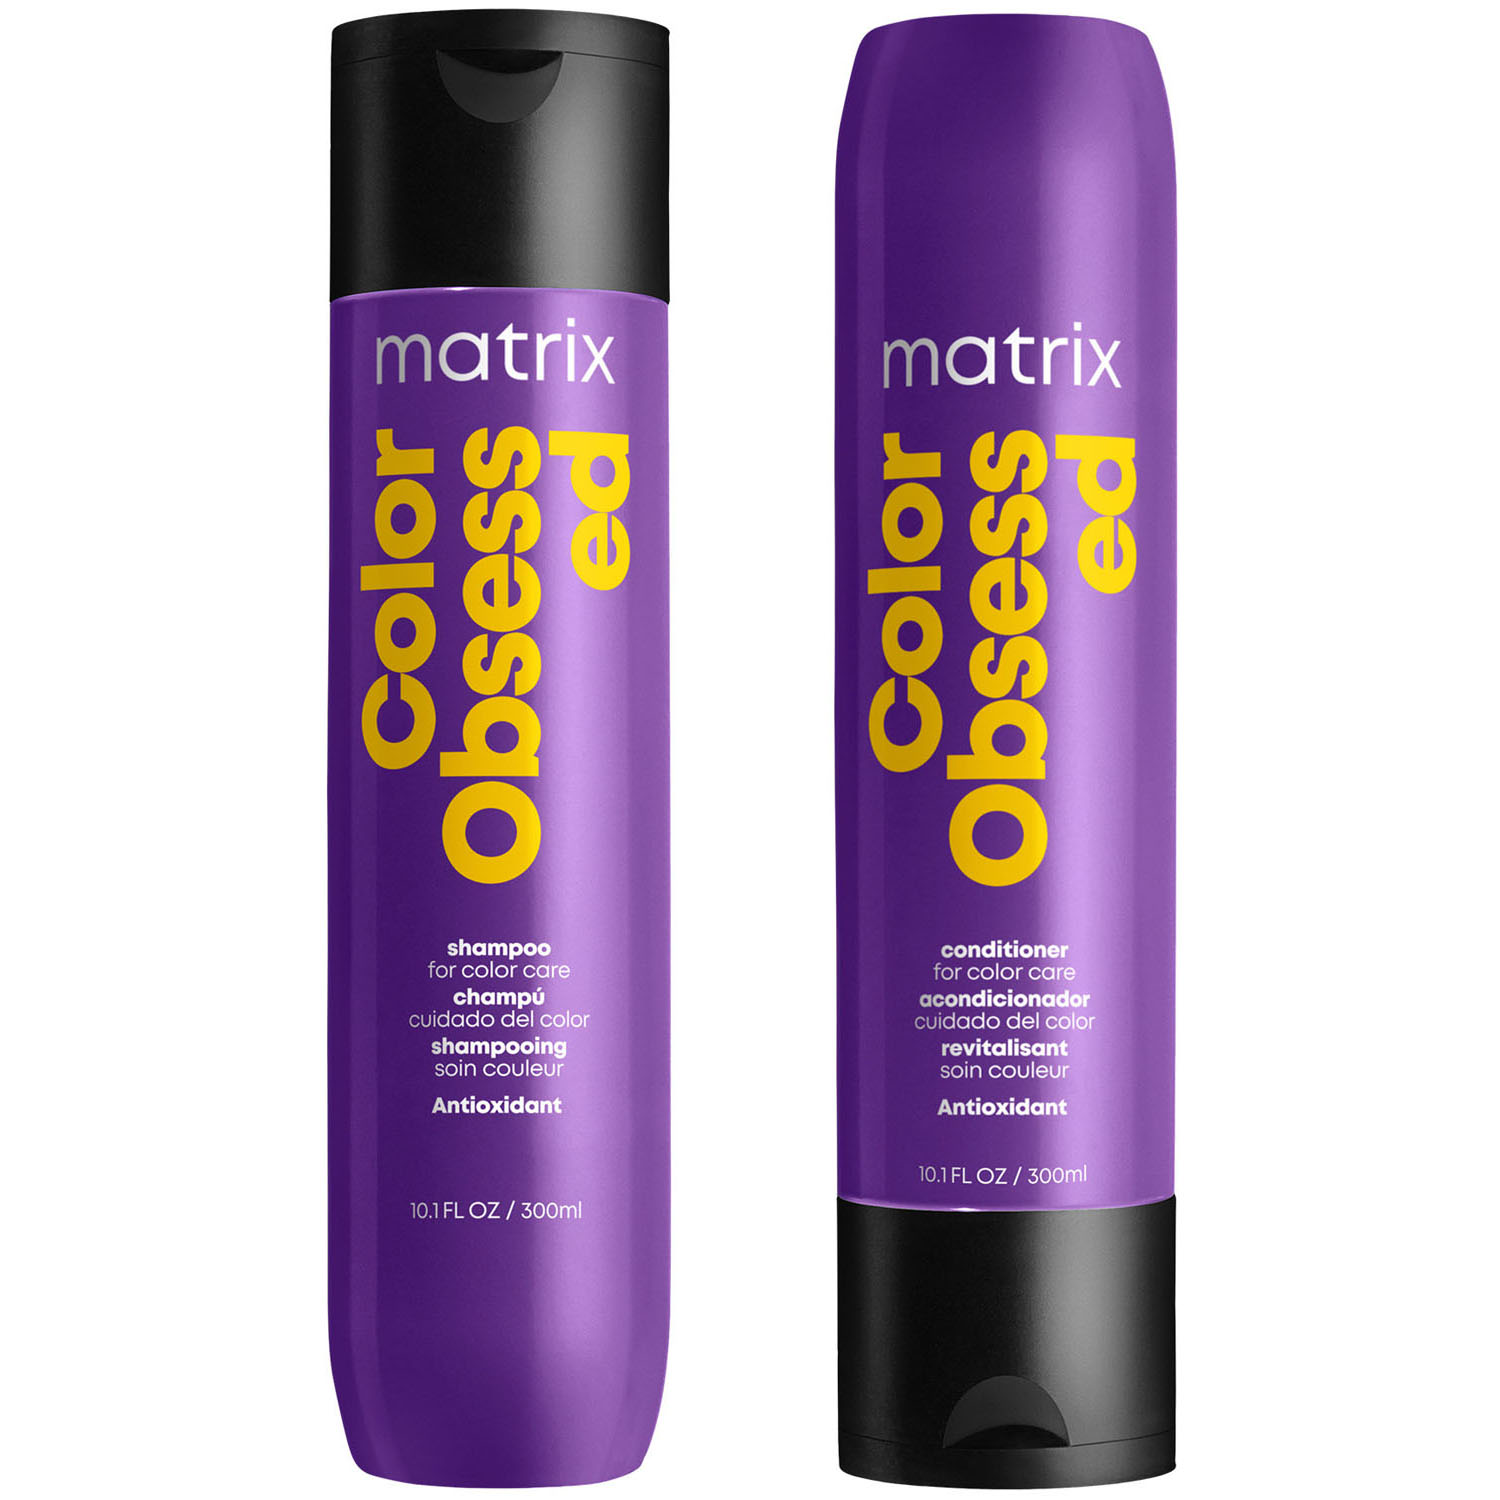 Matrix Комплект Колор Обсэссд Шампунь 300 мл + Кондиционер 300 мл (Matrix, Total results) matrix color obsessed shampoo 300 мл шампунь для защиты цвета окрашенных волос